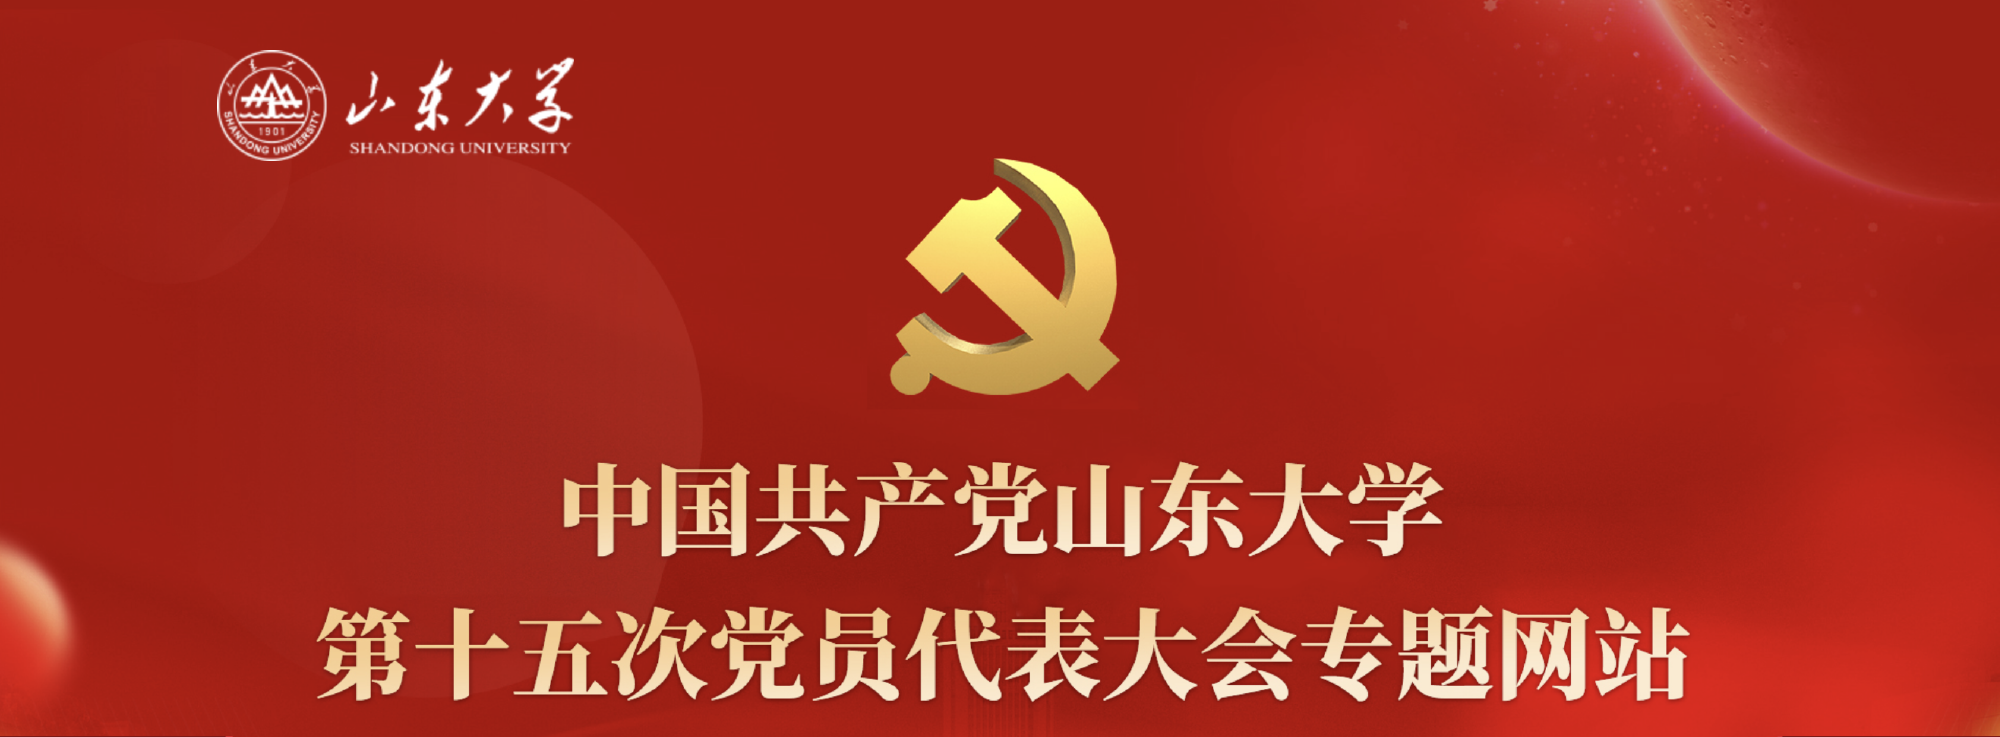 中国共产党山东大学第十五次党员代表大会专题网站正式上线